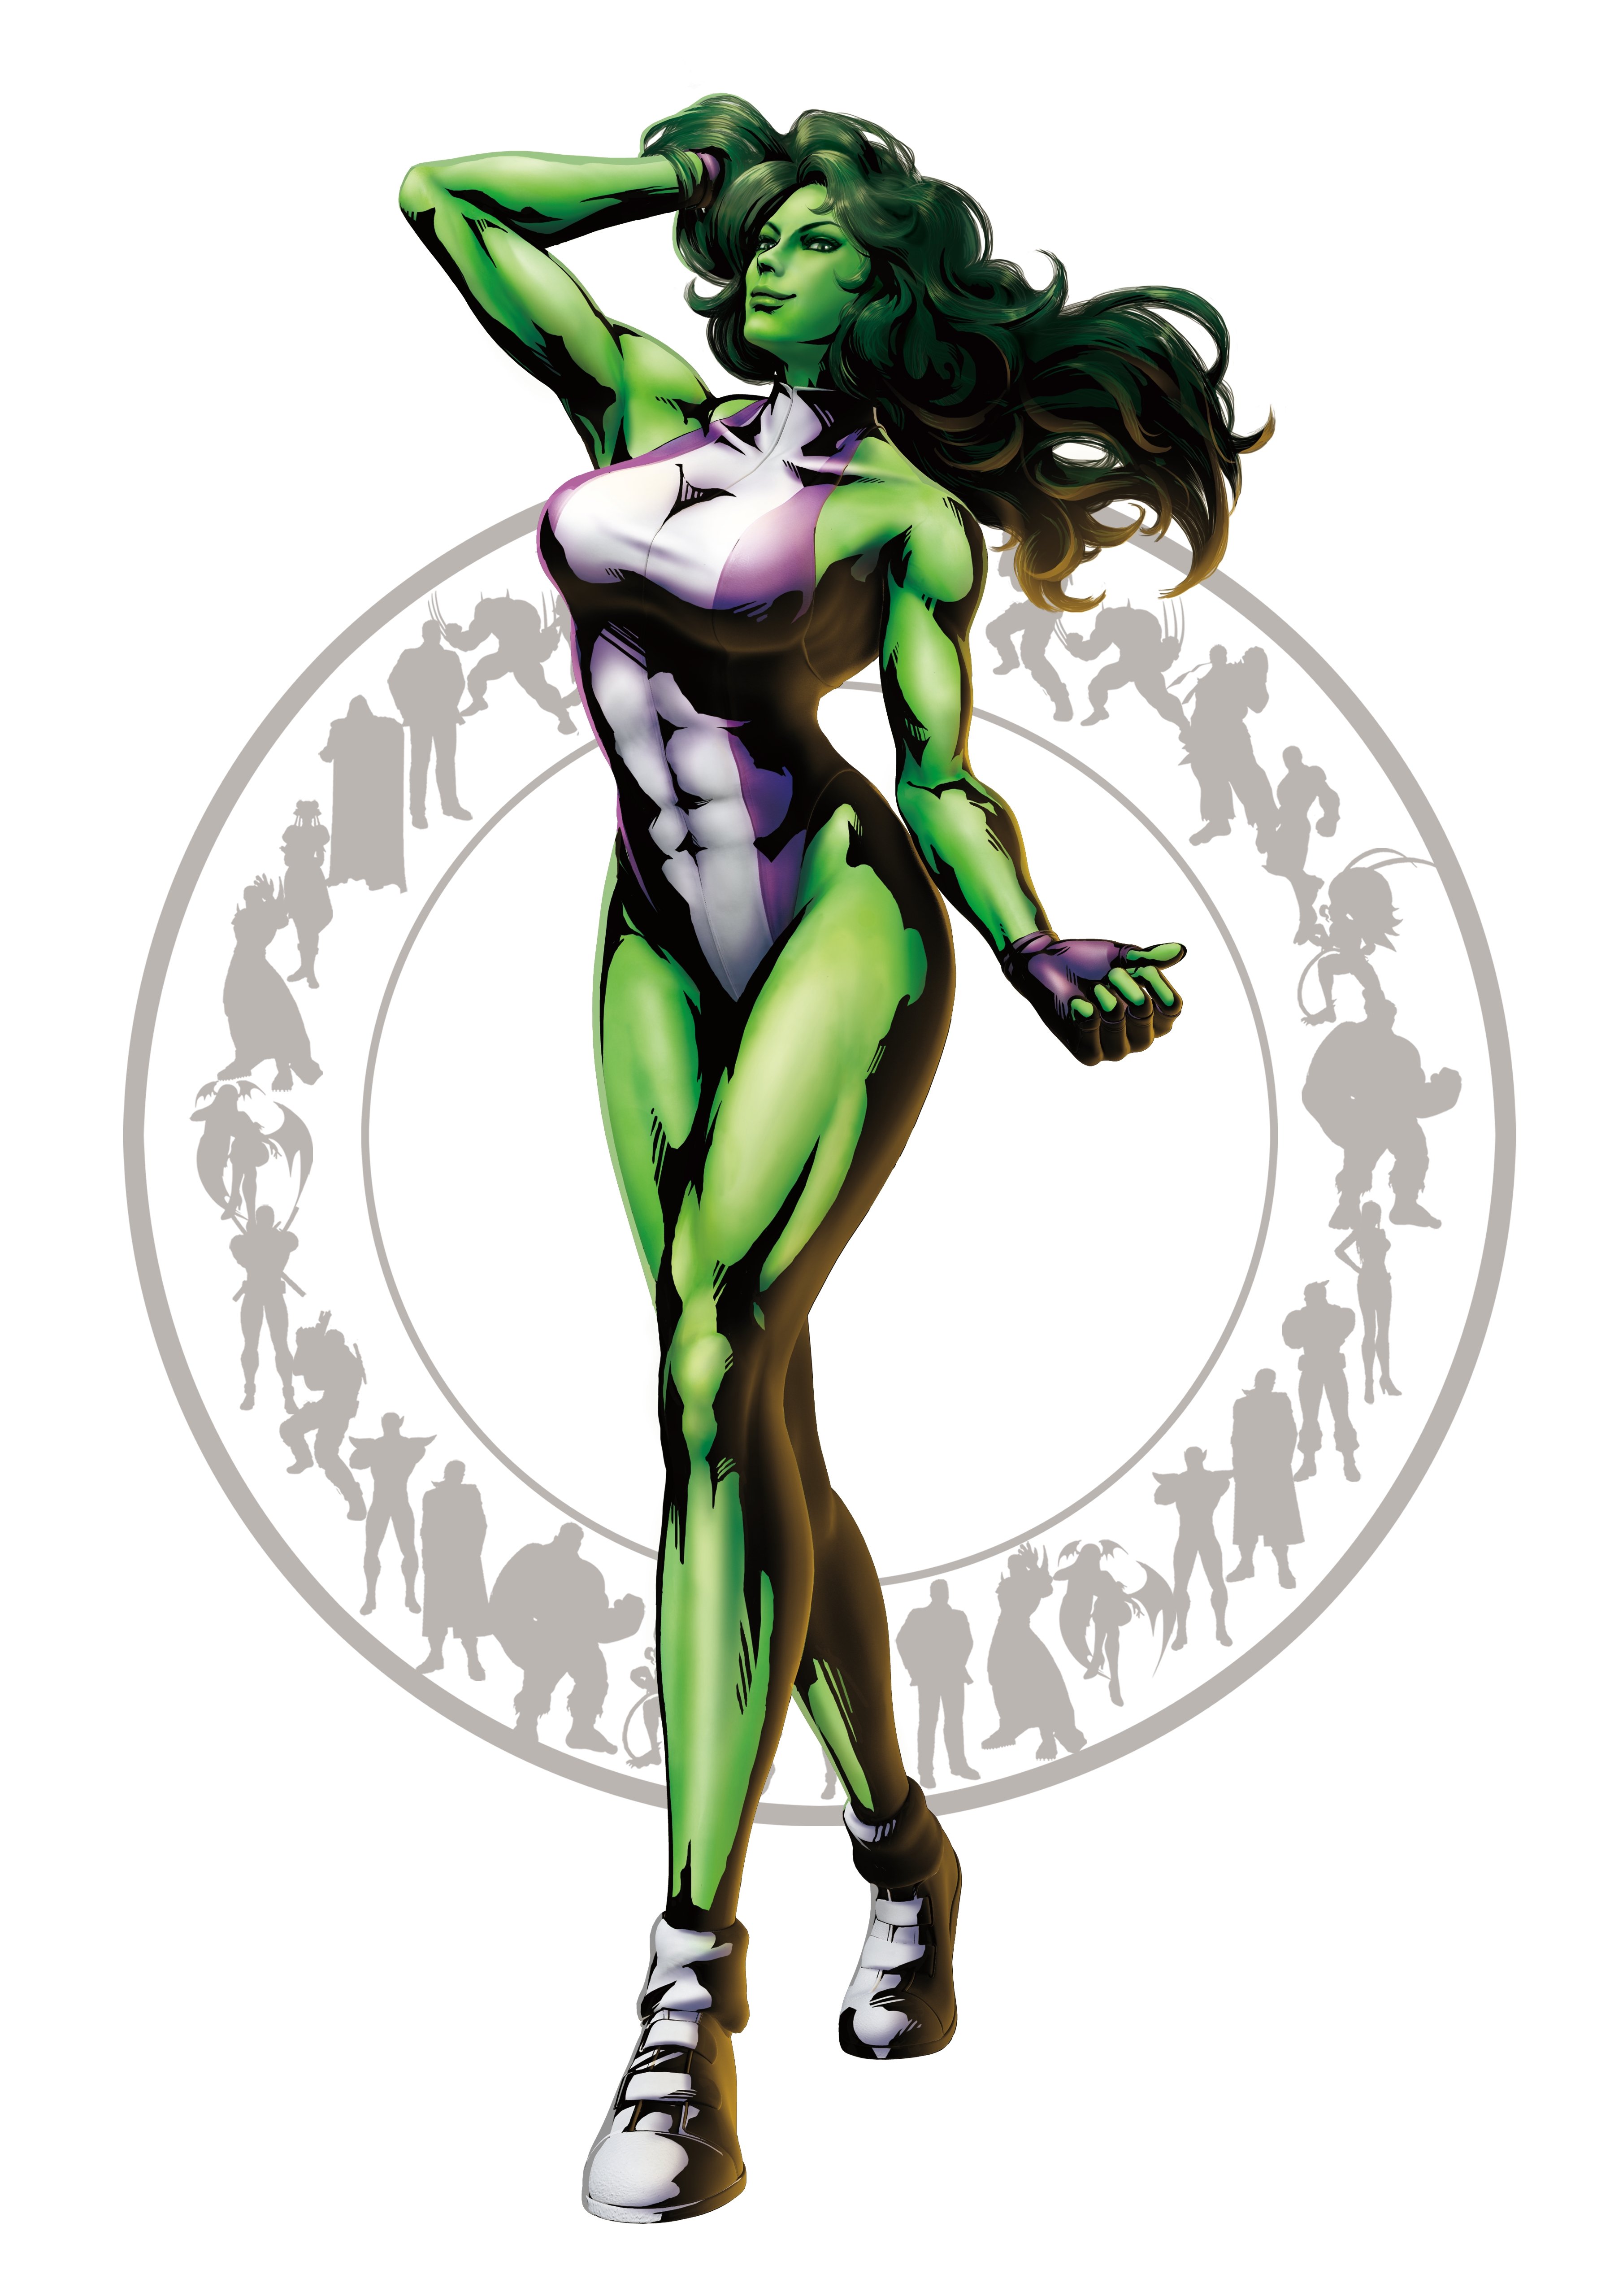 She-Hulk #10